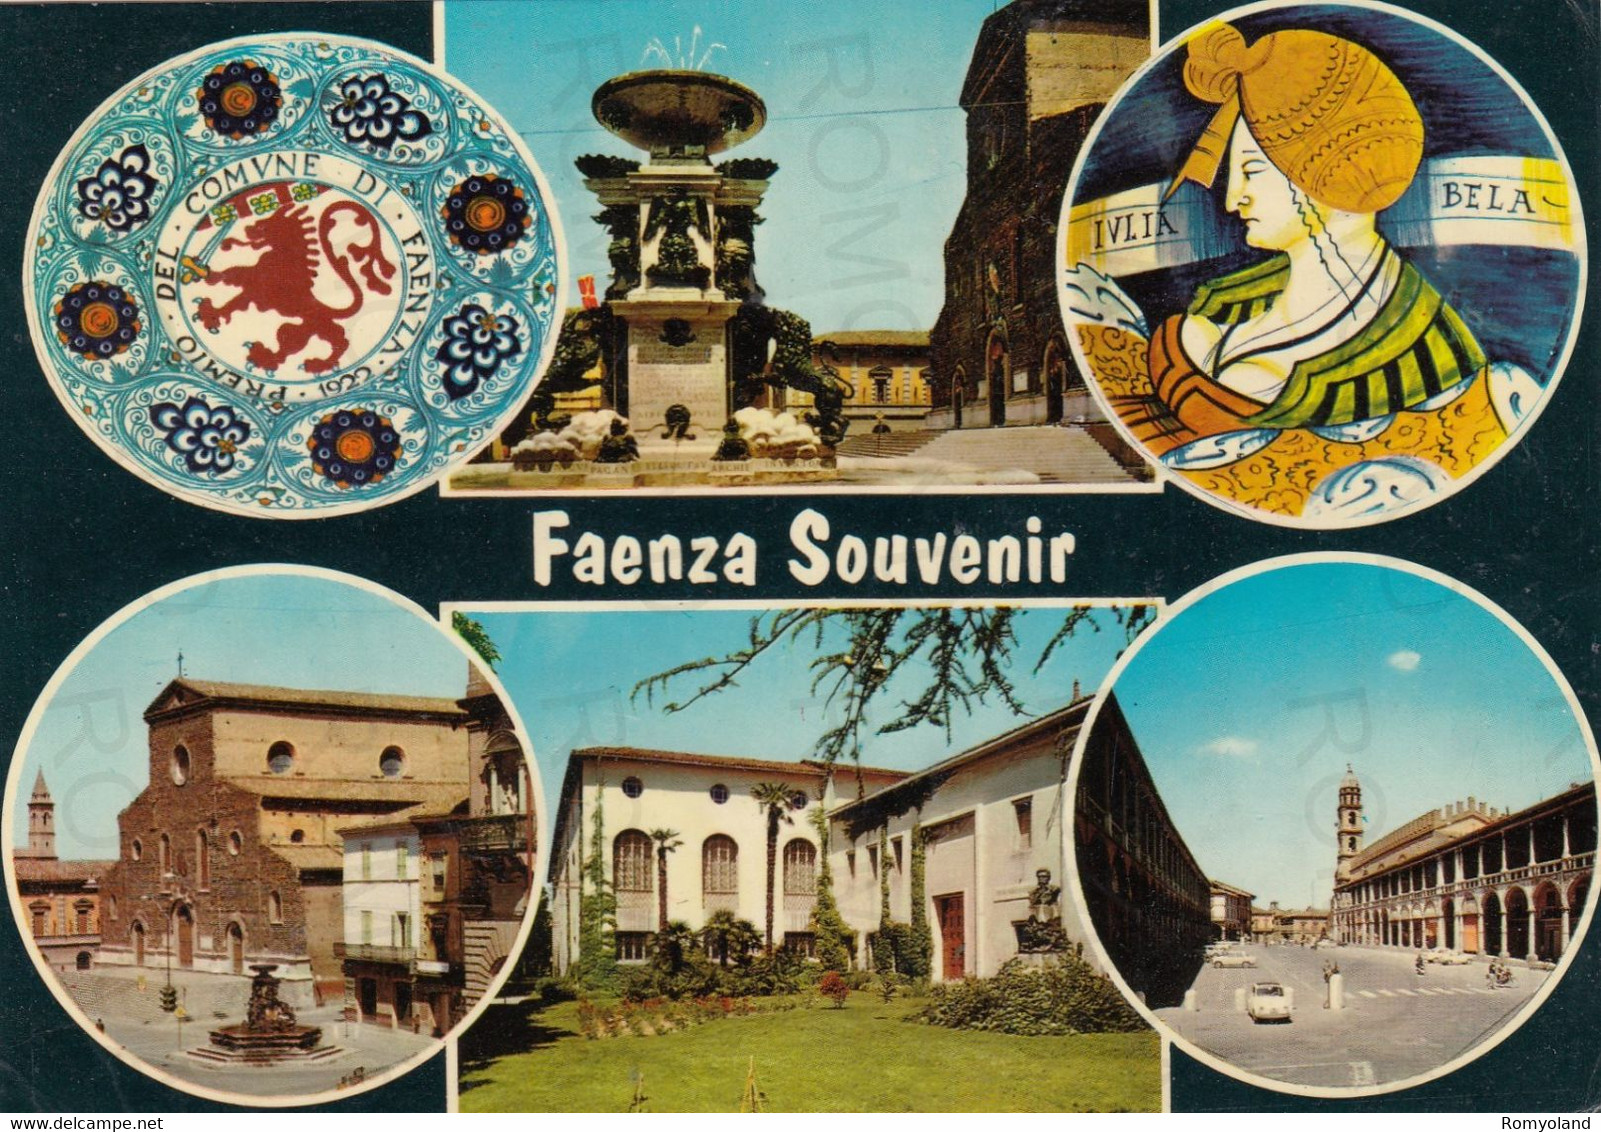 CARTOLINA  FAENZA,EMILIA ROMAGNA-SOUVENIR-STORIA,MEMORIA,CULTURA,RELIGIONE,IMPERO ROMANO,BELLA ITALIA,VIAGGIATA 1970 - Faenza